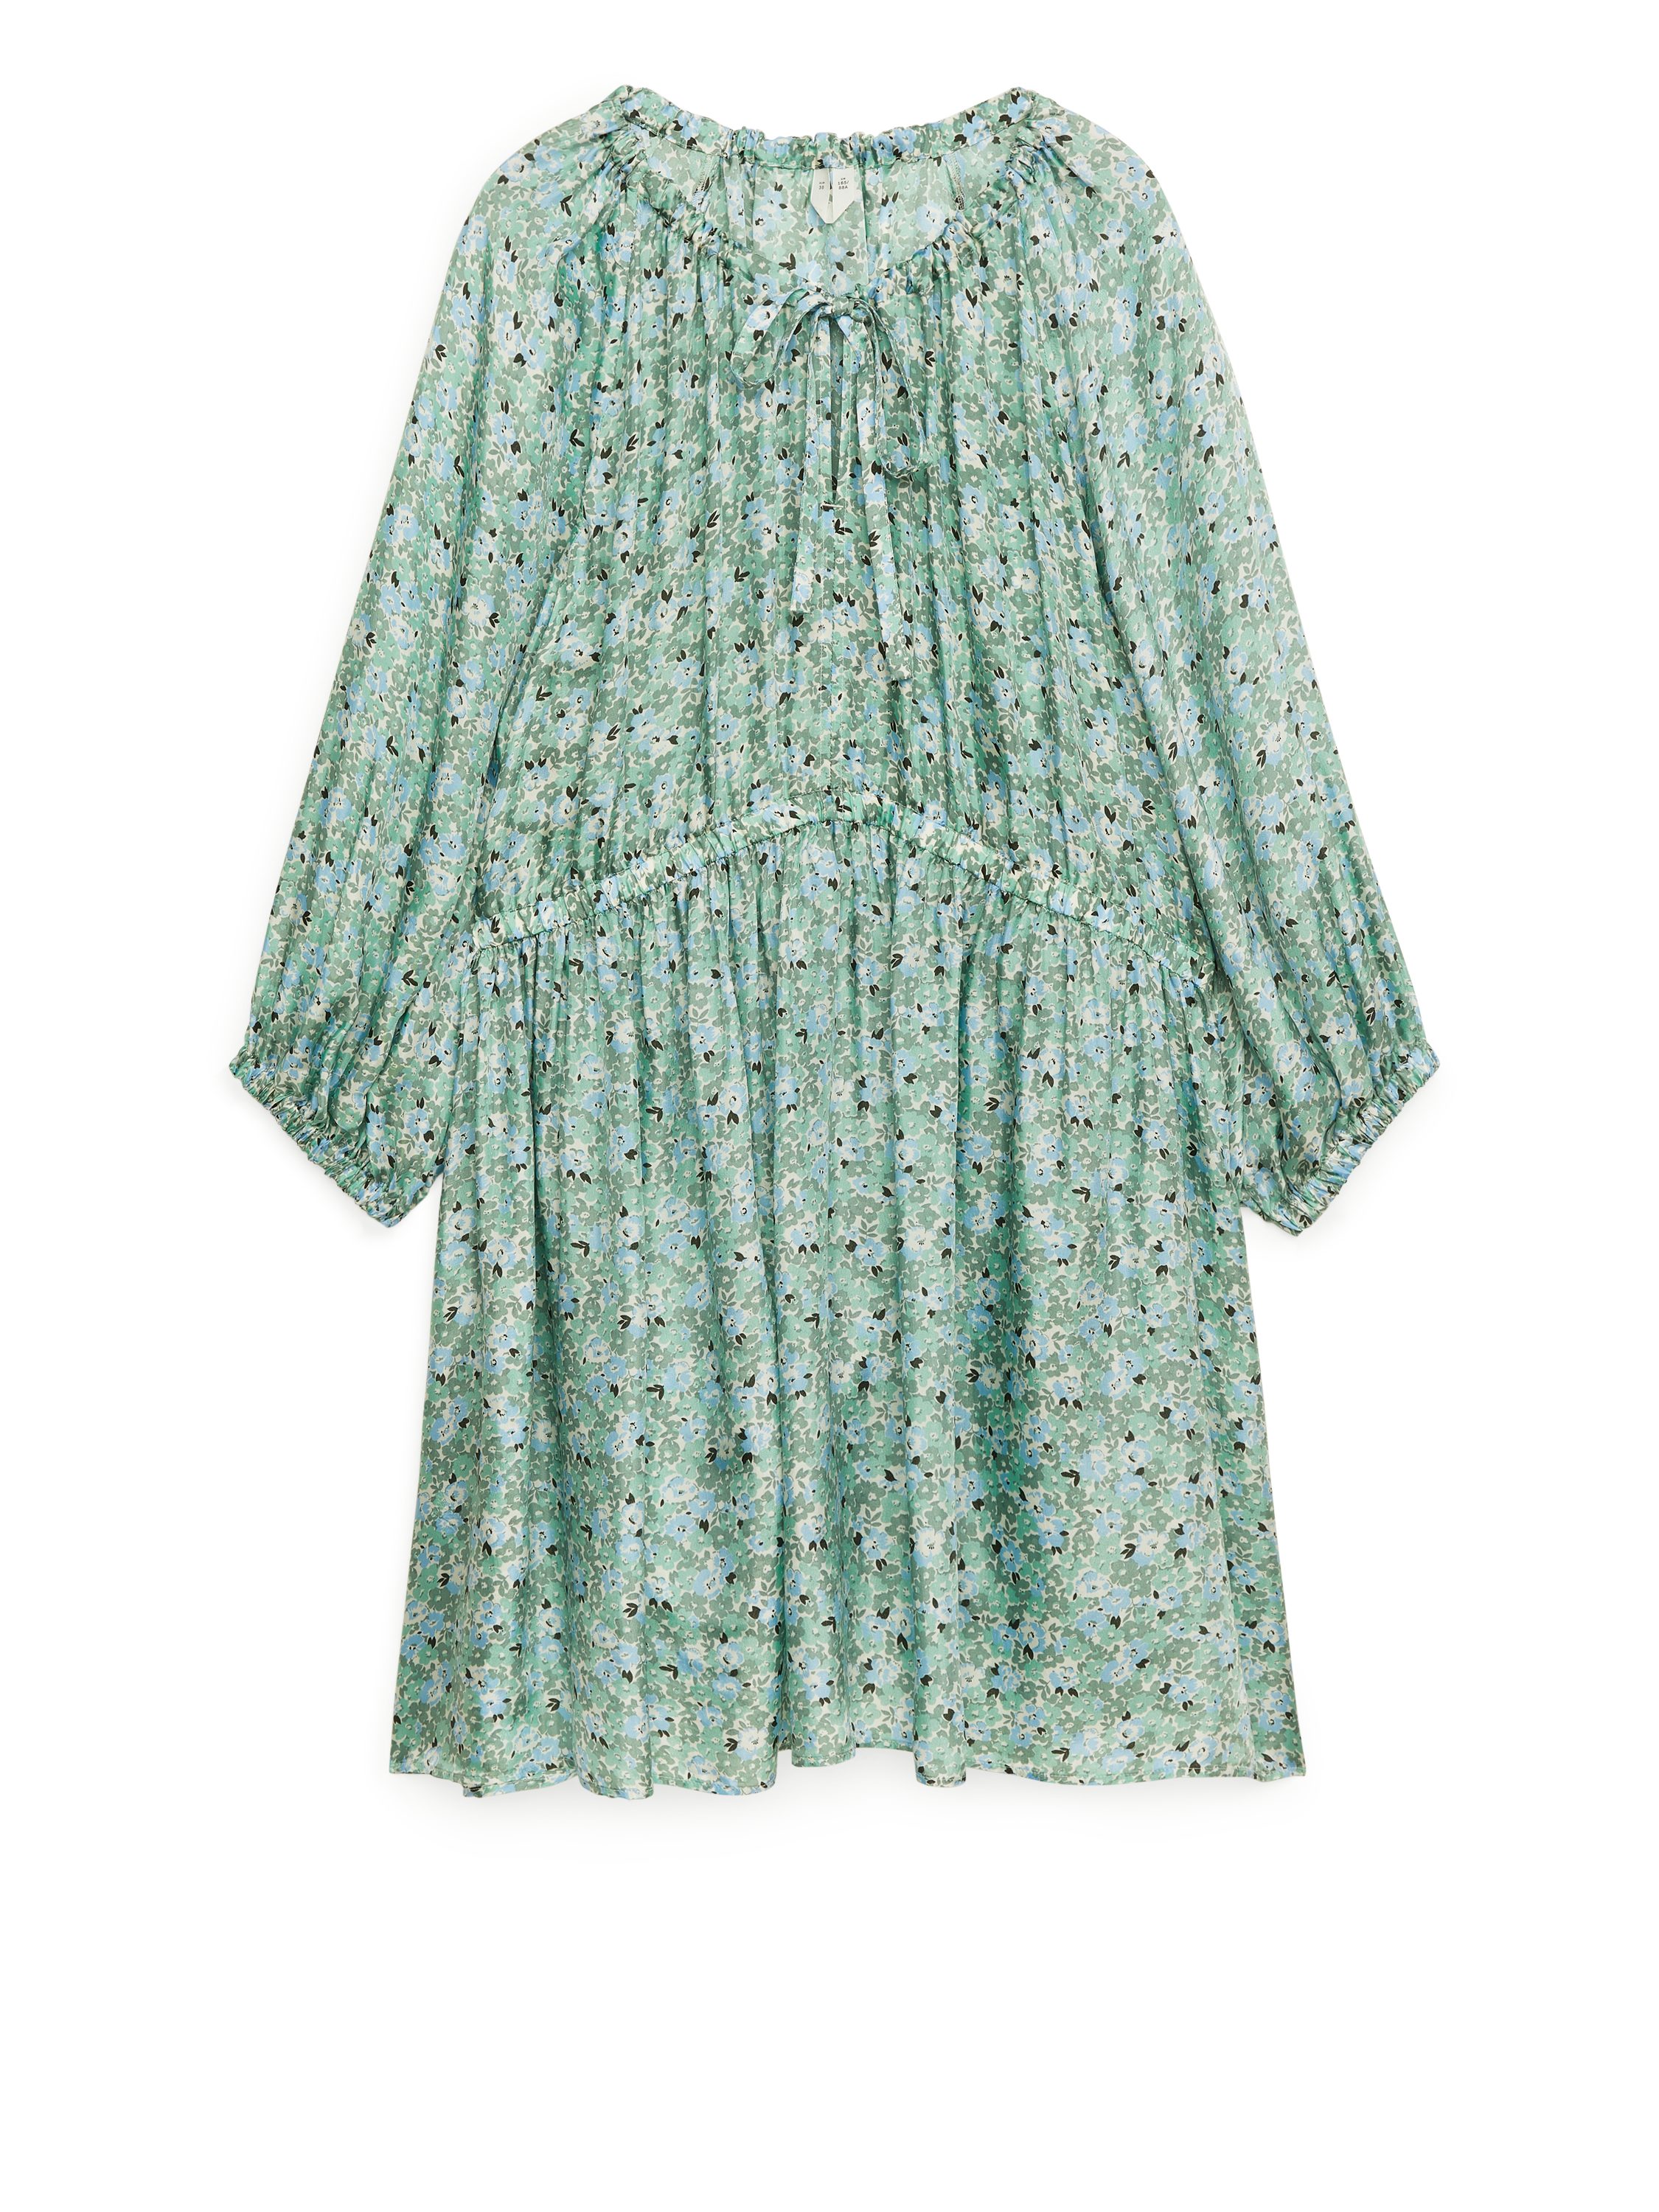 Billede af Arket Floral Dress Green, Hverdagskjoler I størrelse 36